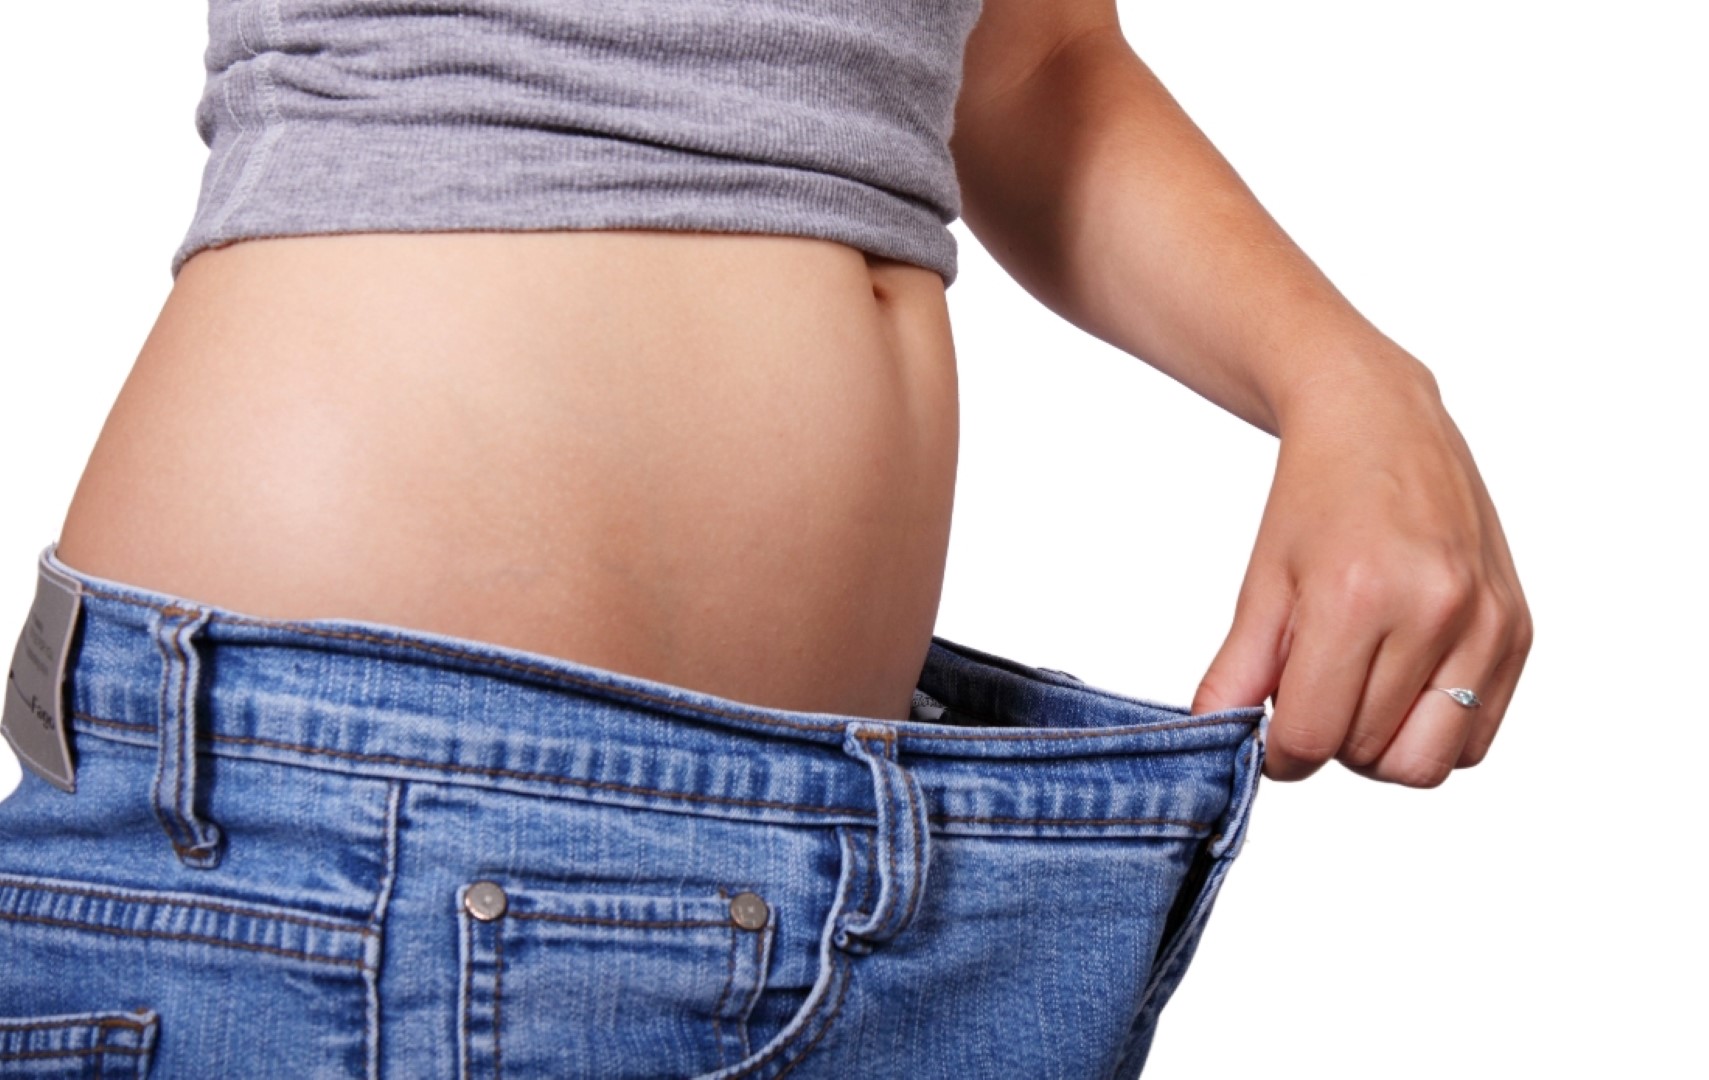 Αύξηση βάρους μετά τα 40: Πώς μπορείς να την αποφύγεις;